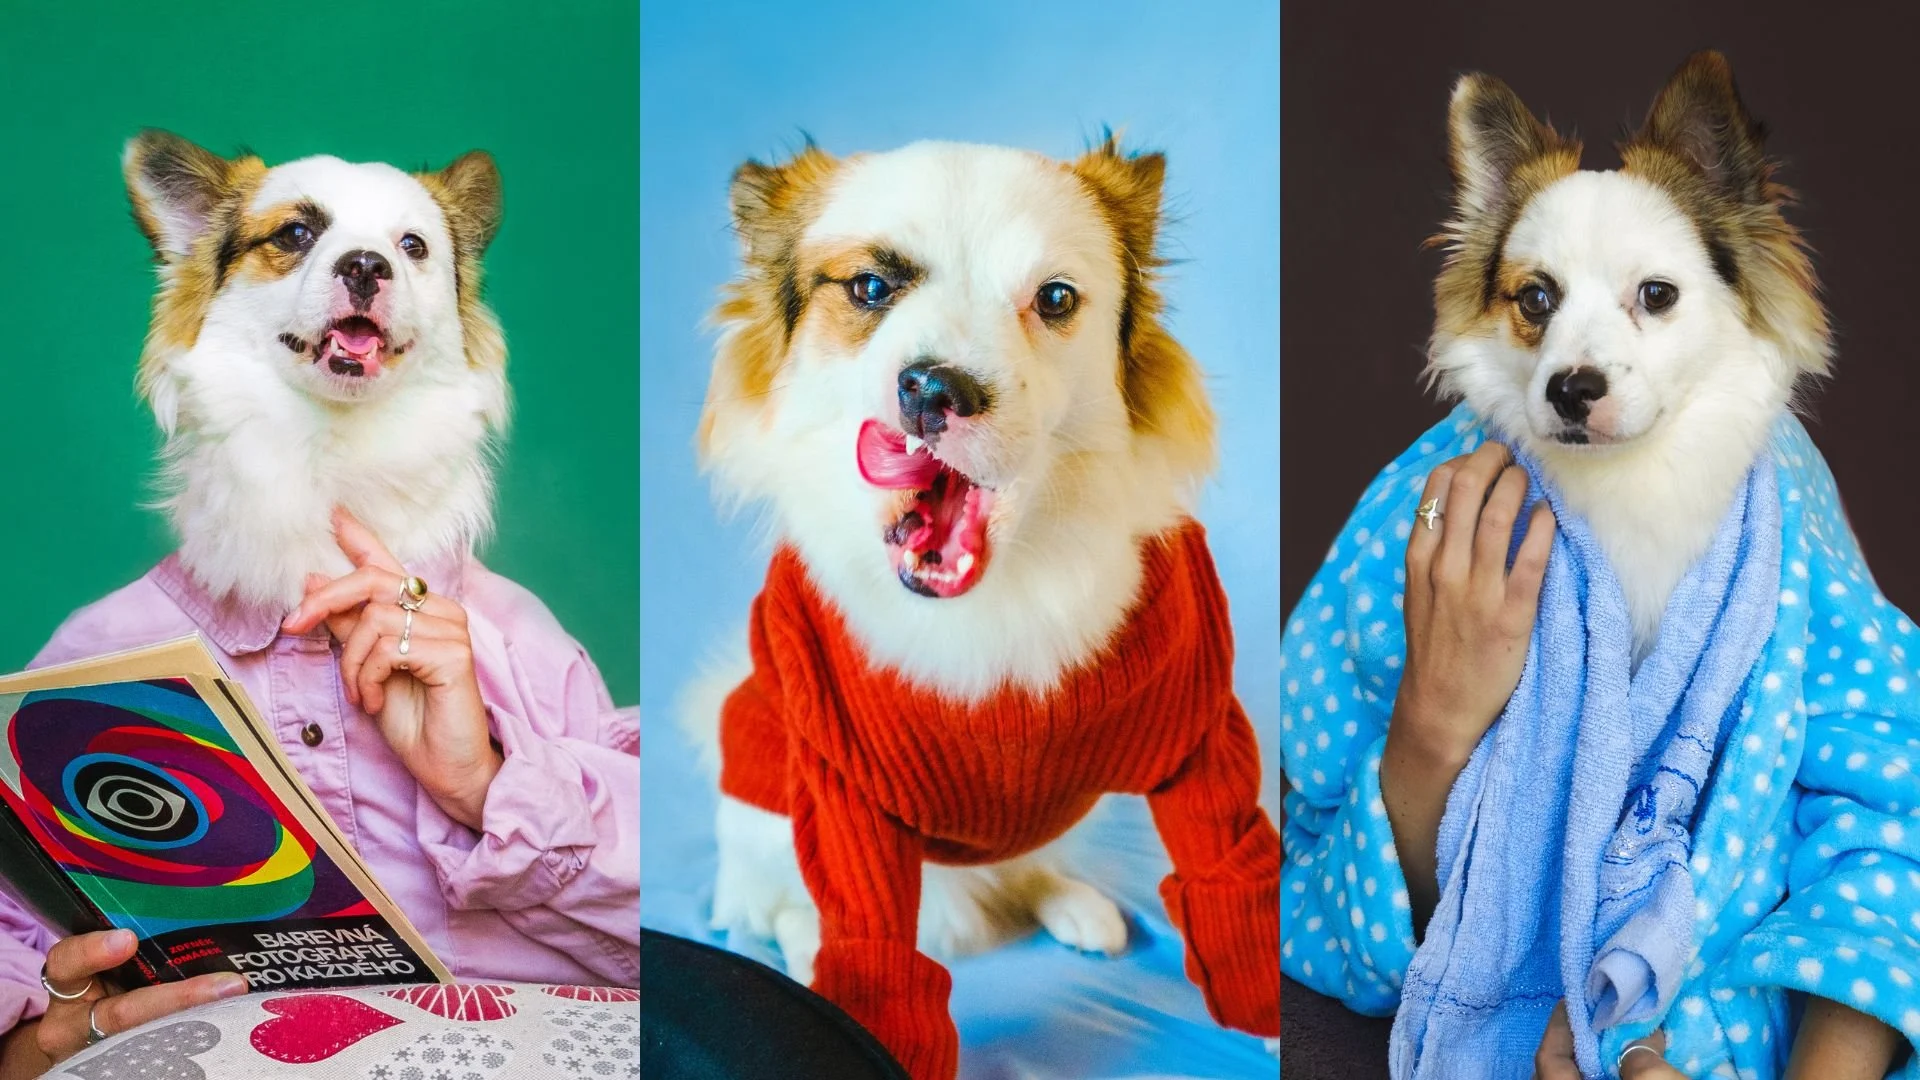 آموزش پرتره سگ در خانه: عکس های خنده دار خلاقانه از حیوان خانگی خود بگیرید